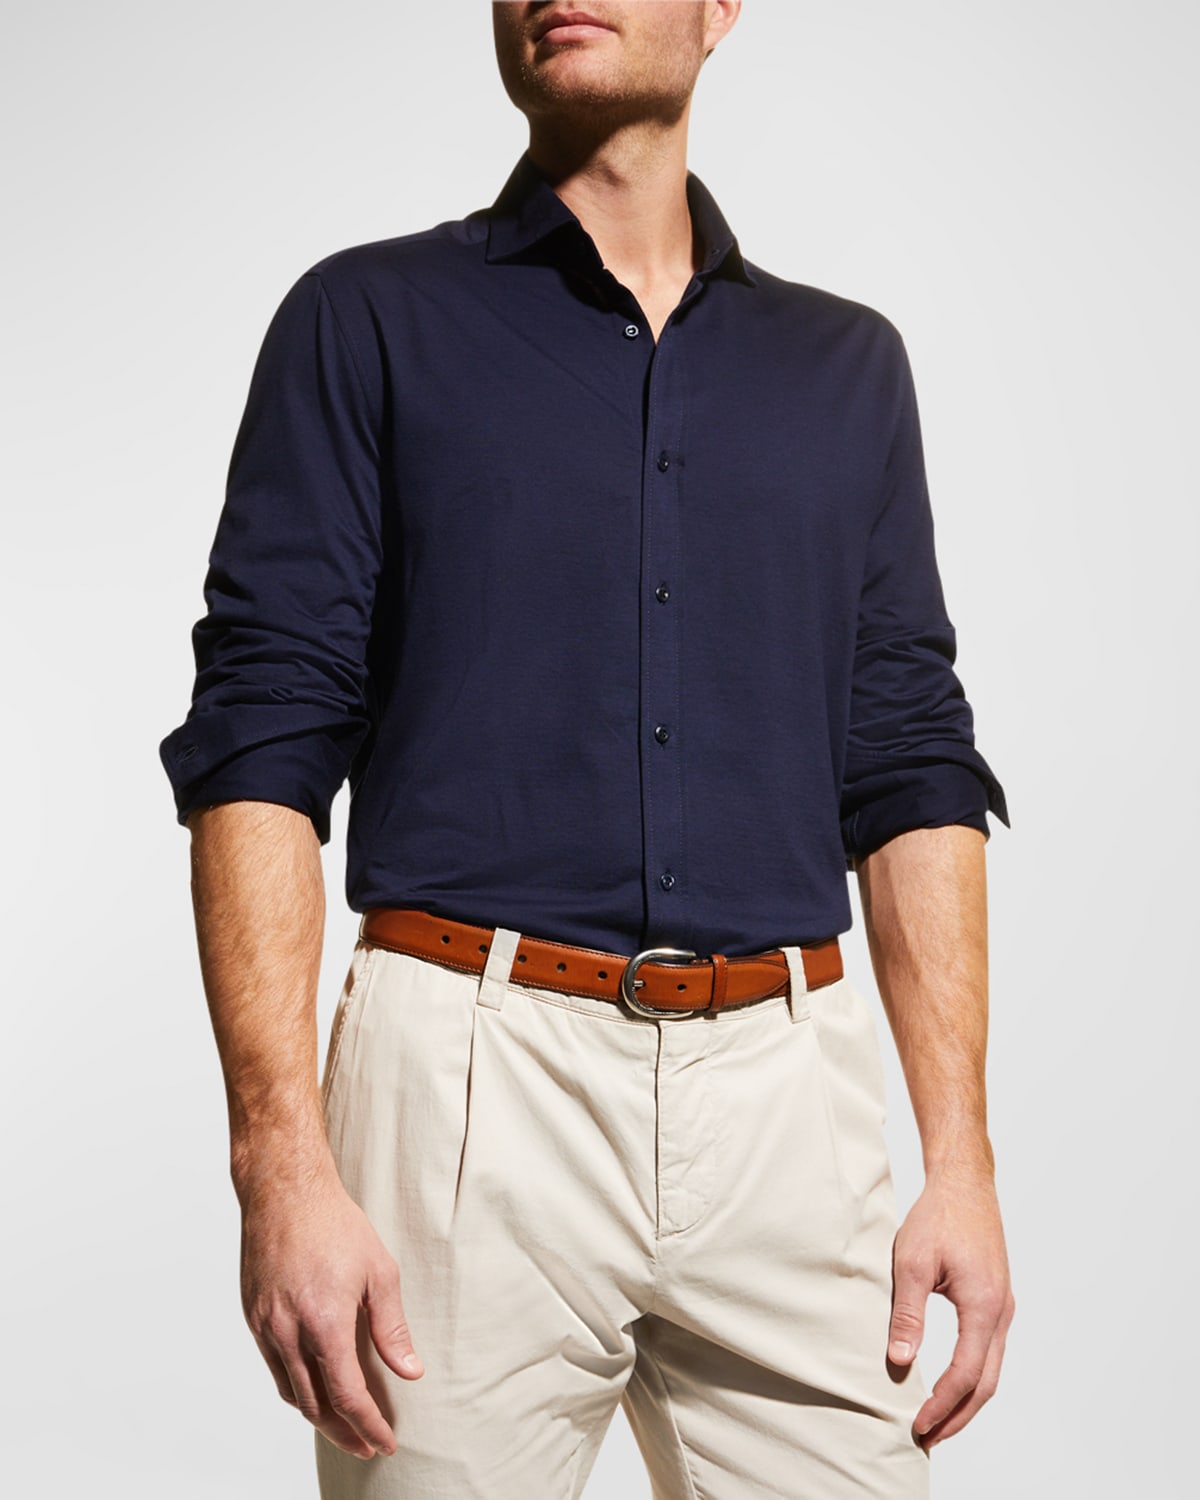 Men's Jersey Knit Sport Shirt